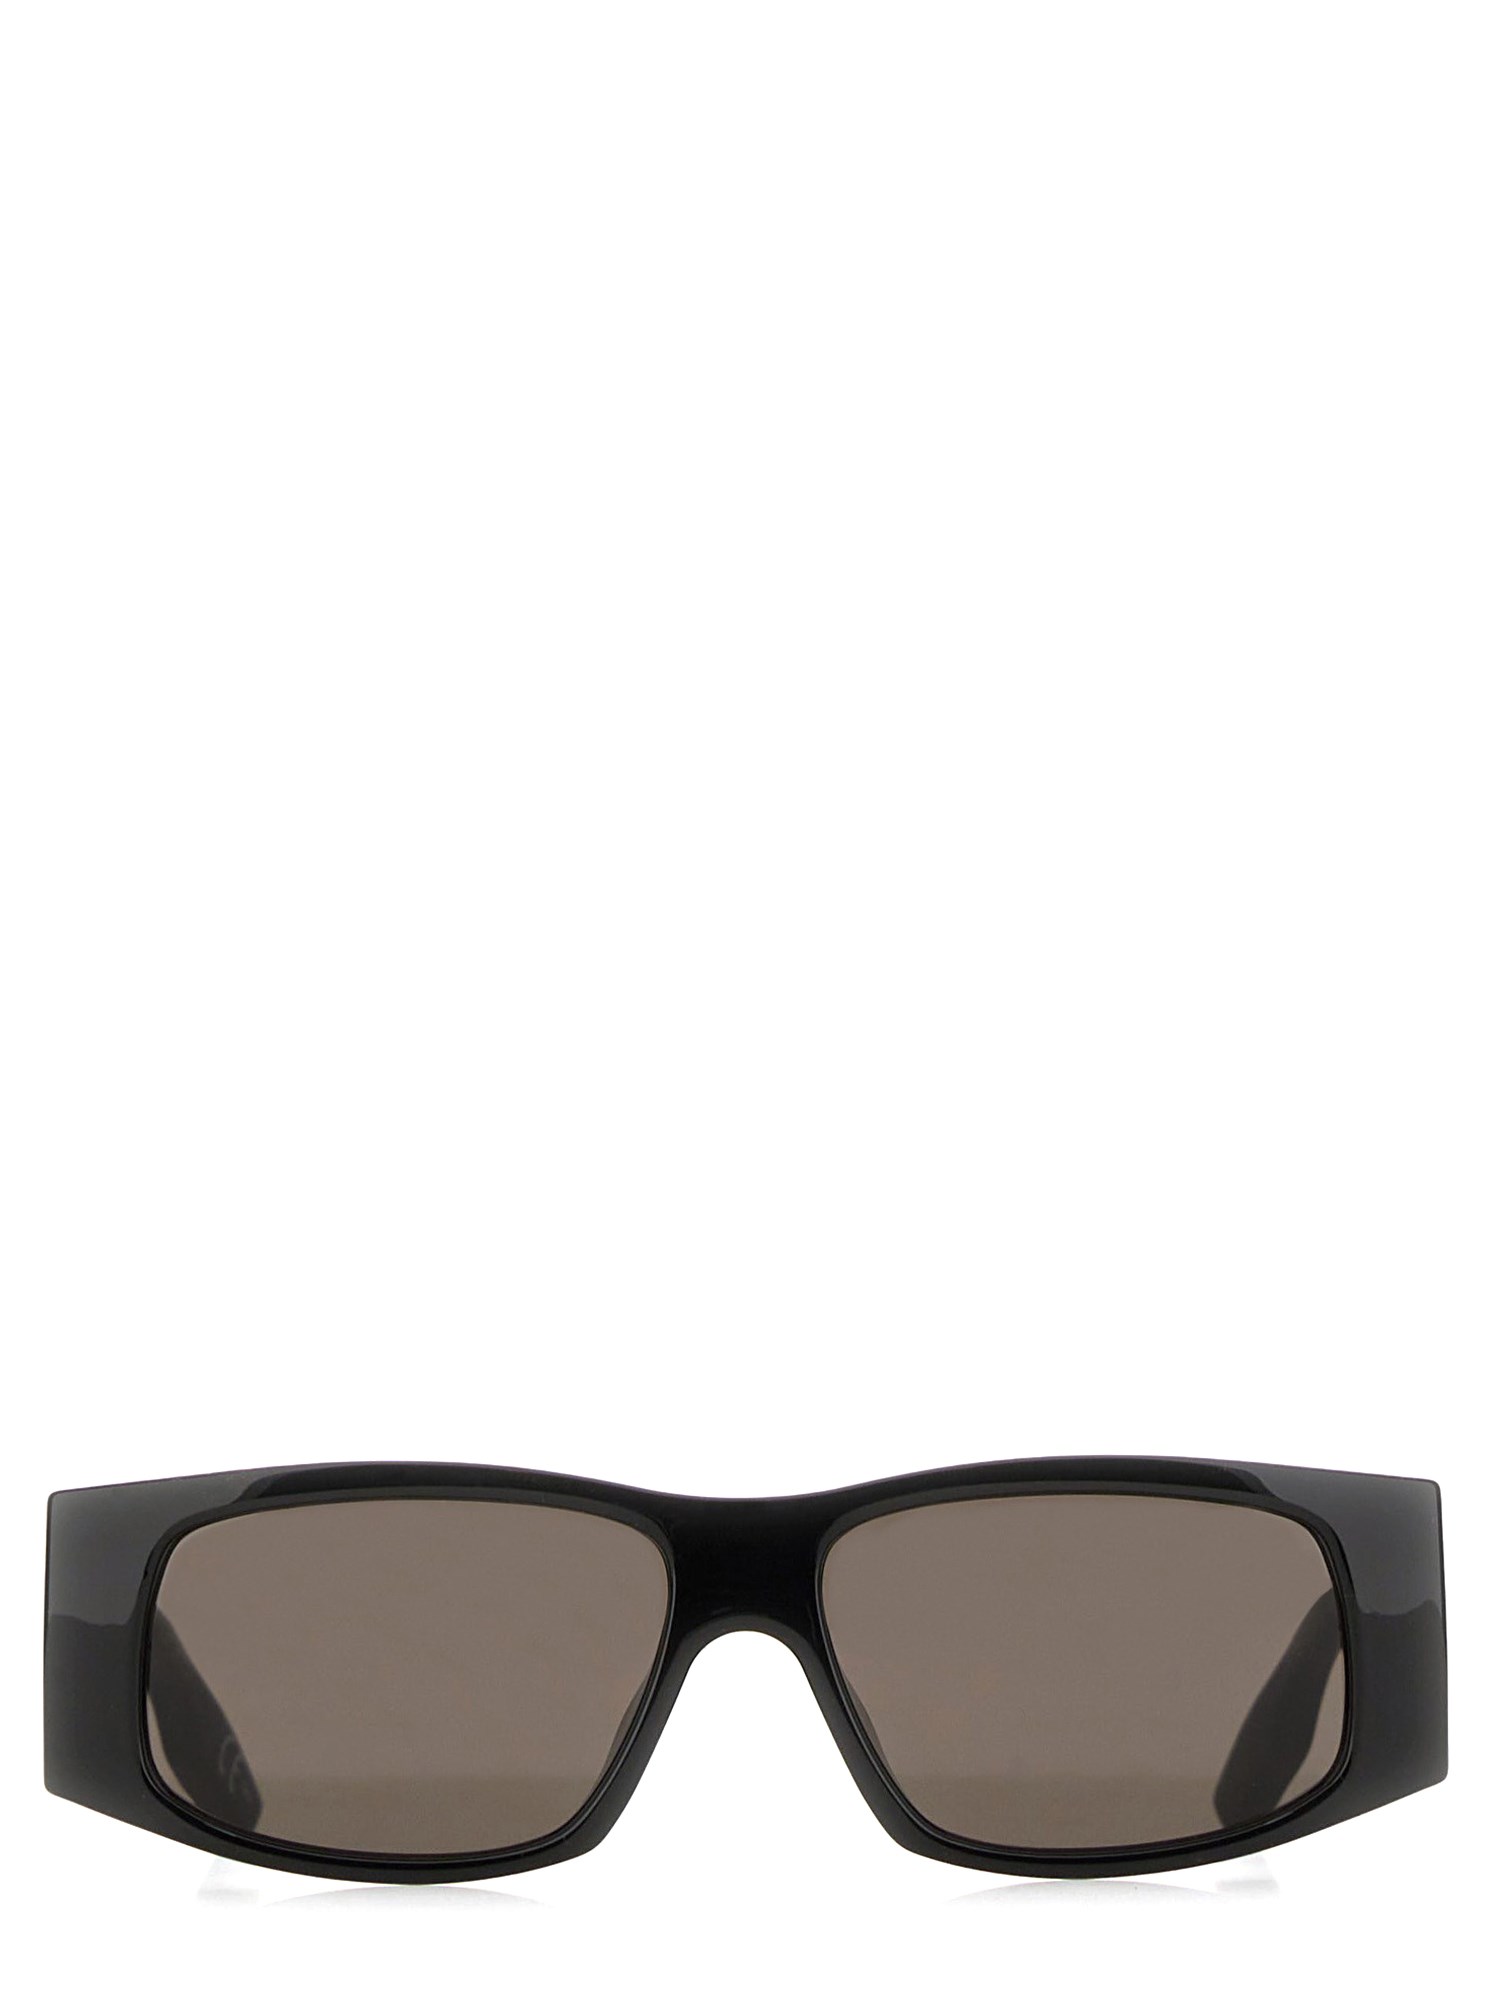 balenciaga led frame sunglasses